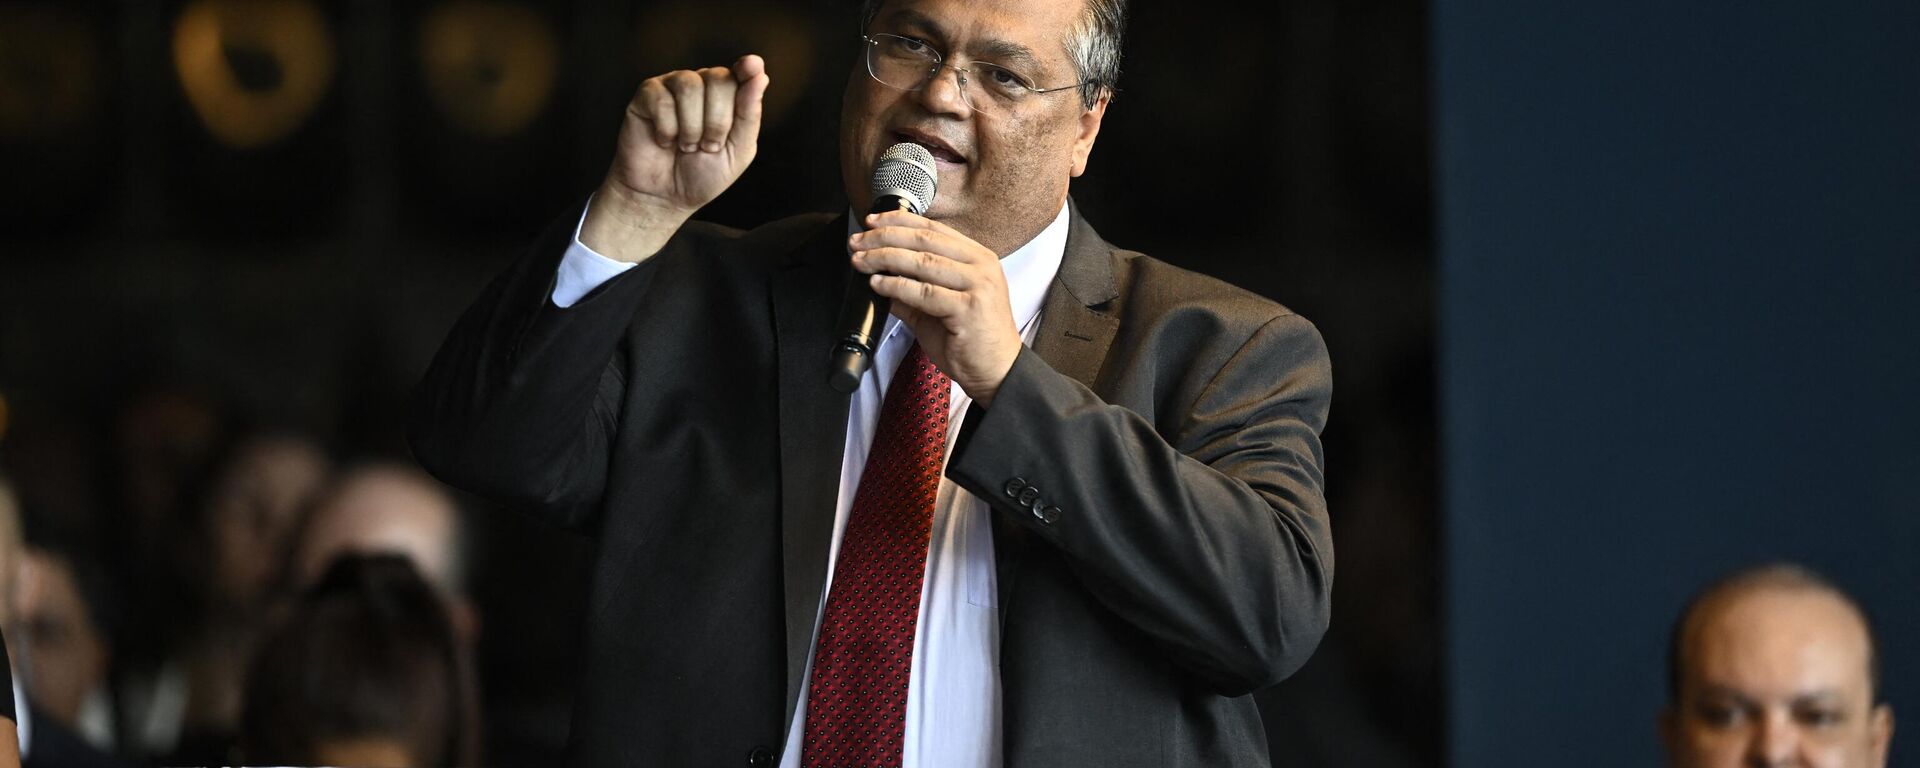 O novo ministro da Justiça, Flavio Dino, discursa durante a cerimônia de posse no Palácio da Justiça, em Brasília, em 2 de janeiro de 2023 - Sputnik Brasil, 1920, 07.01.2023